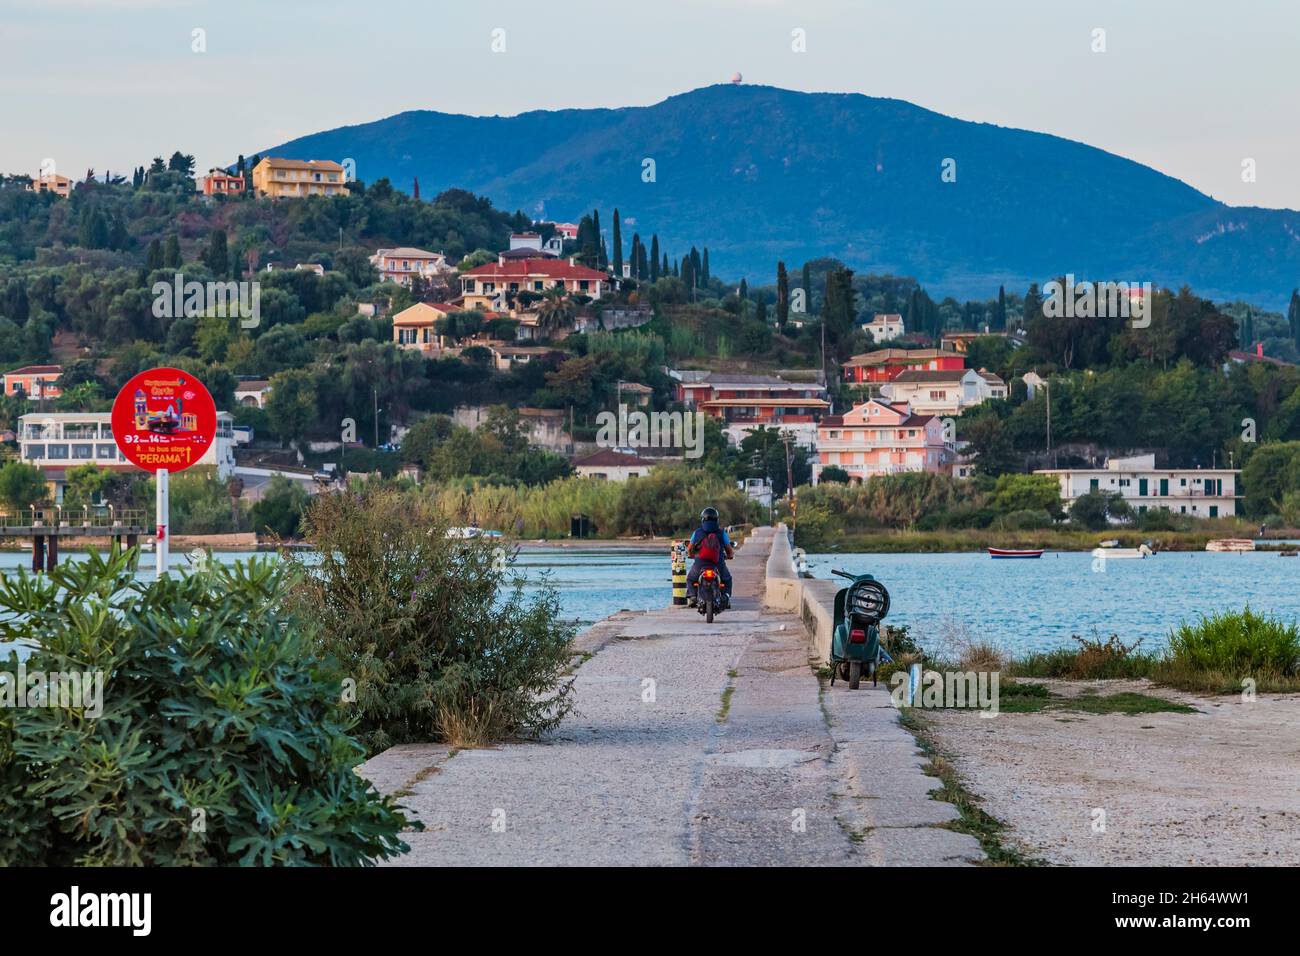 Ammira lo stretto molo di cemento lungo a Kanoni Corfu Grecia, che collega Kanoni e Perama, il luogo ideale per avvistare. Gli aerei stanno atterrando a destra abo Foto Stock